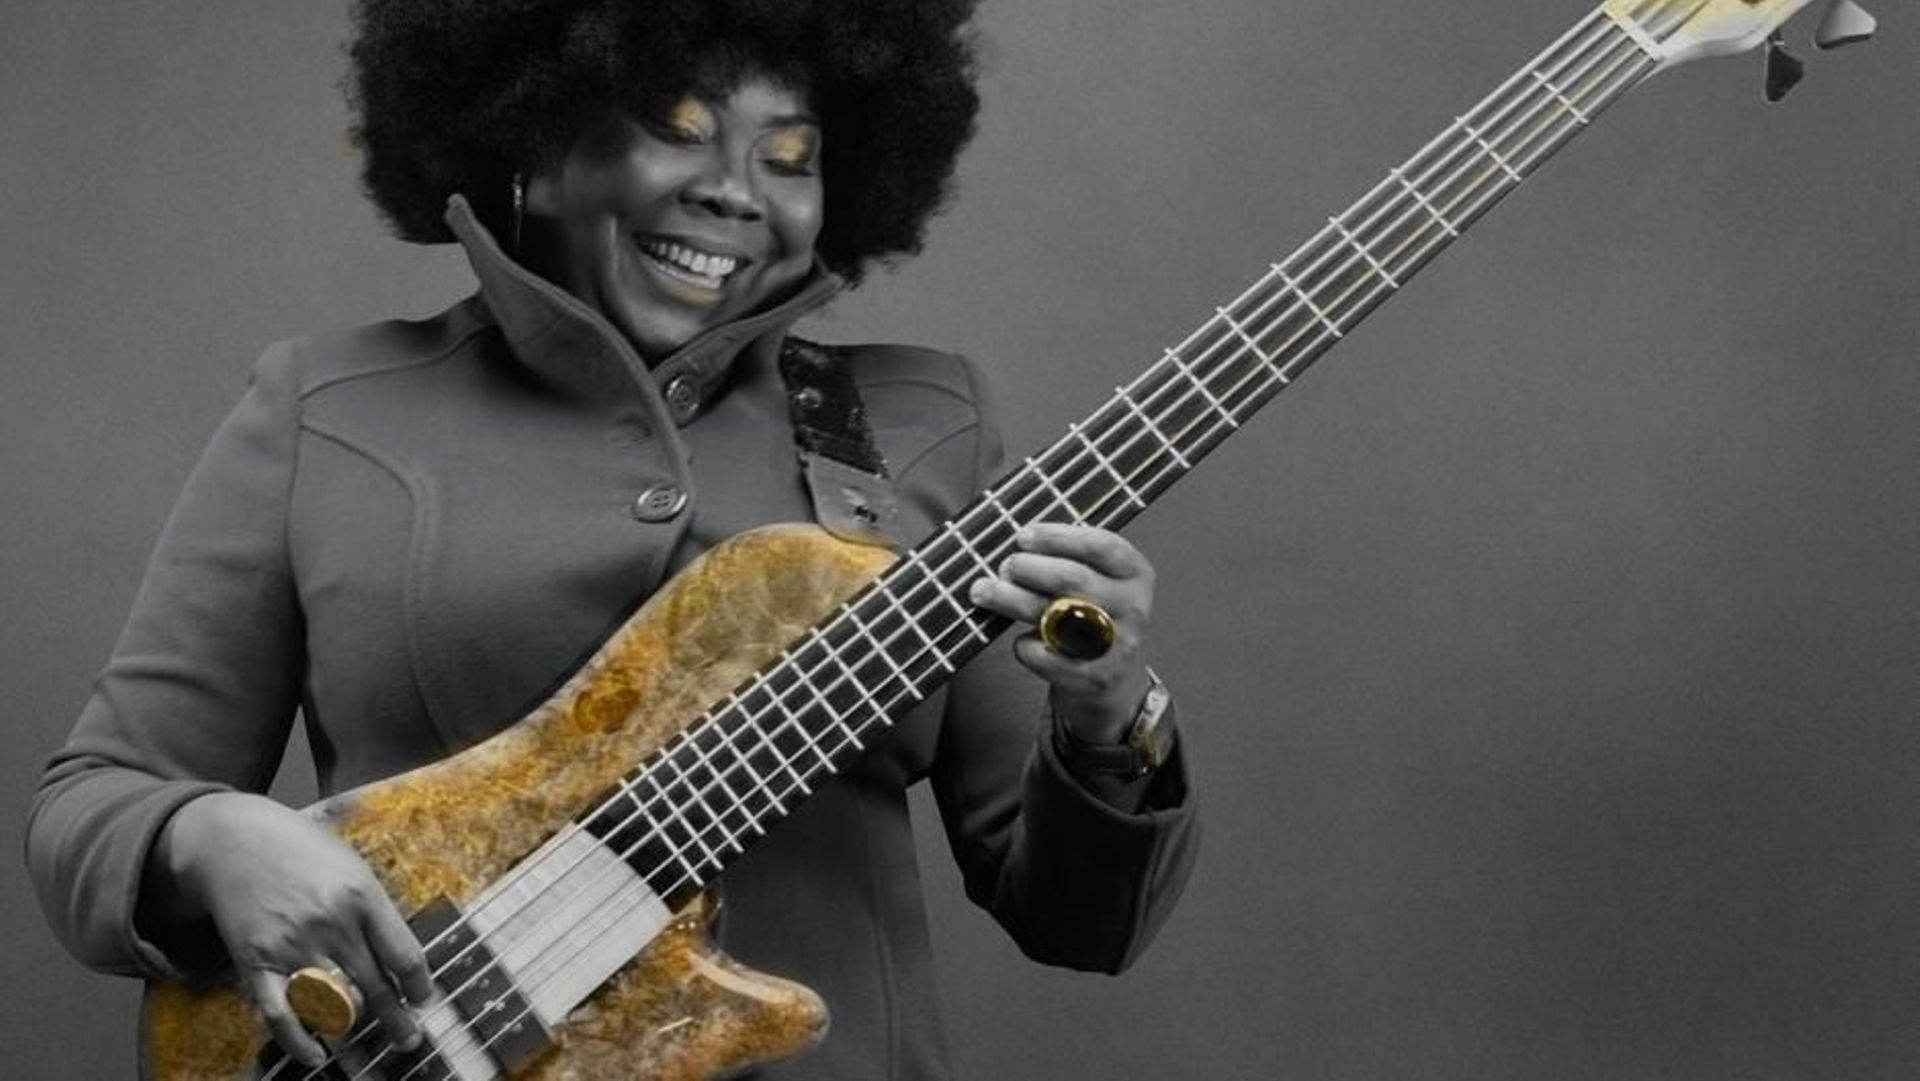 La bassiste revient bientôt avec un nouvel album en hommage aux artistes du continent africain.